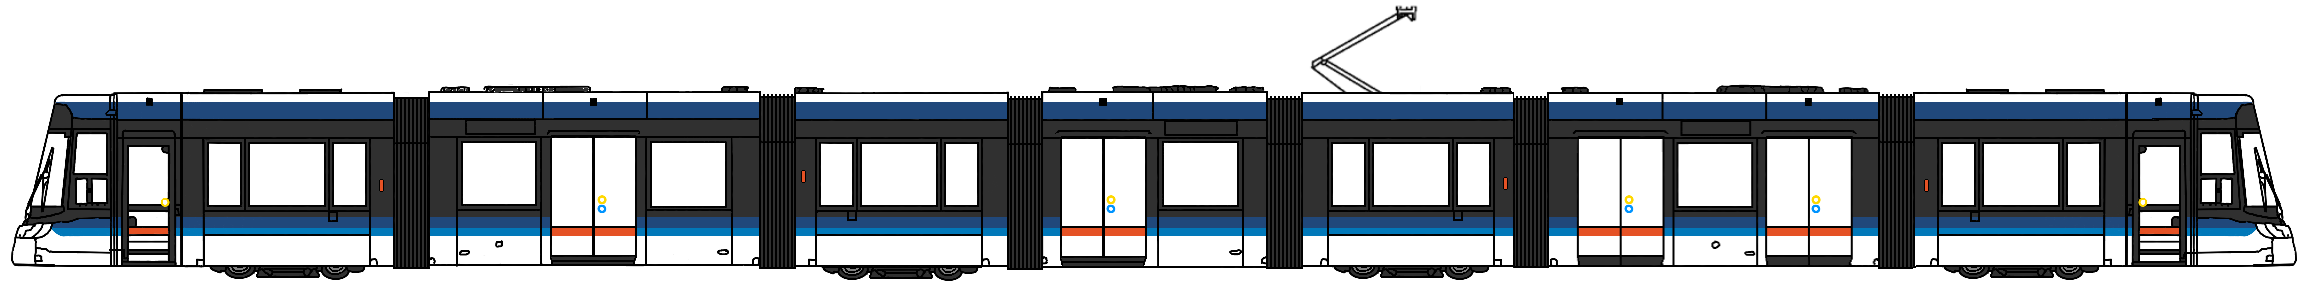 Farbskizze-Lichtbahn-7teilig